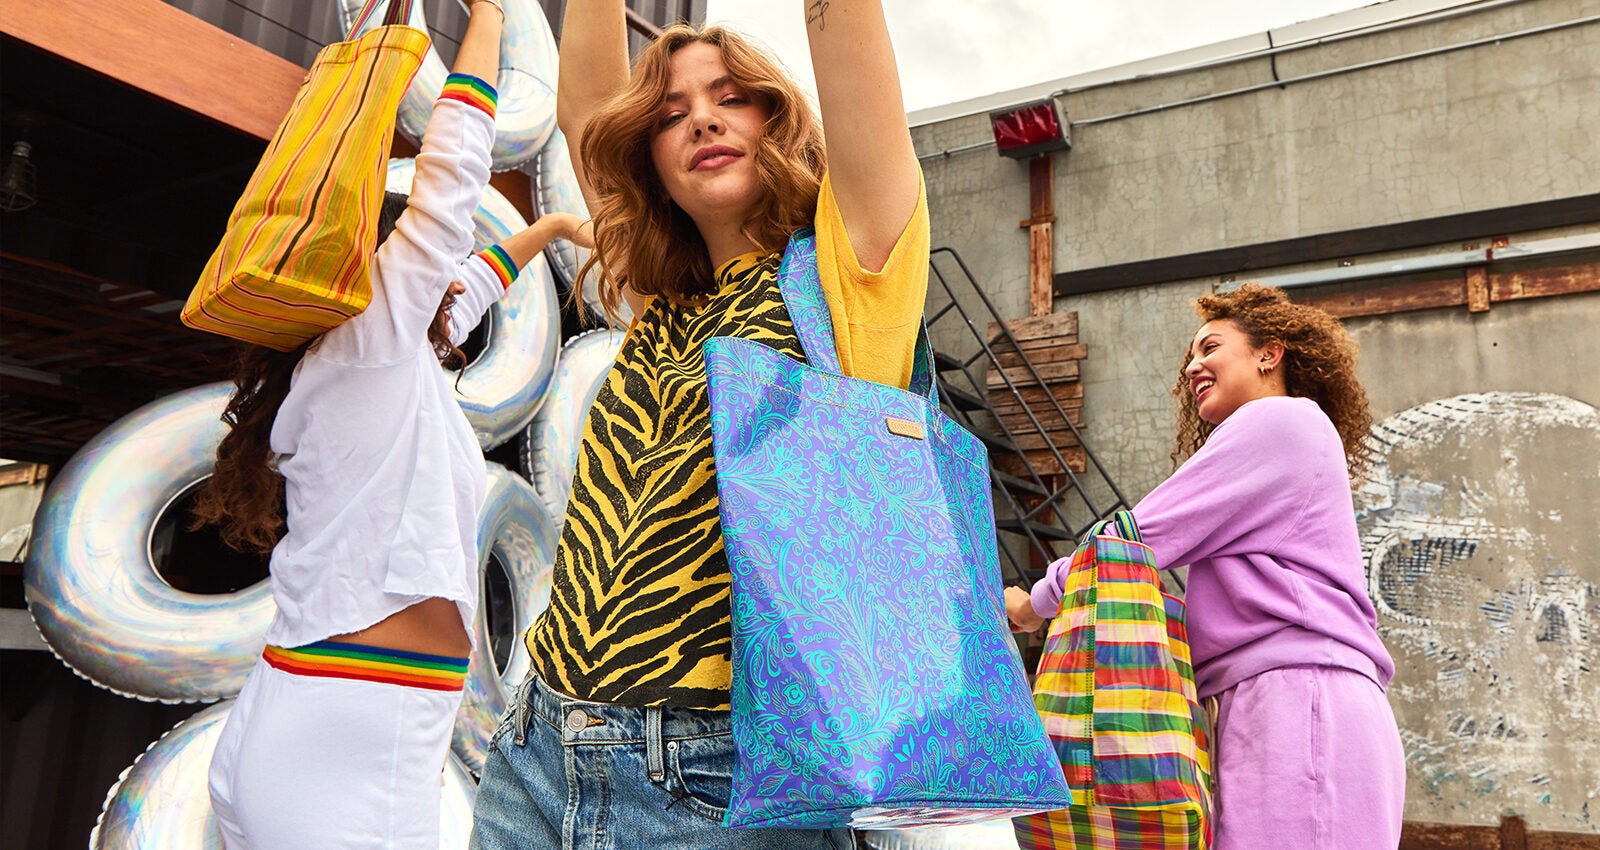 Fleming Pop Quilt Double-Zip Mini Bag: Women's Designer Crossbody Bags